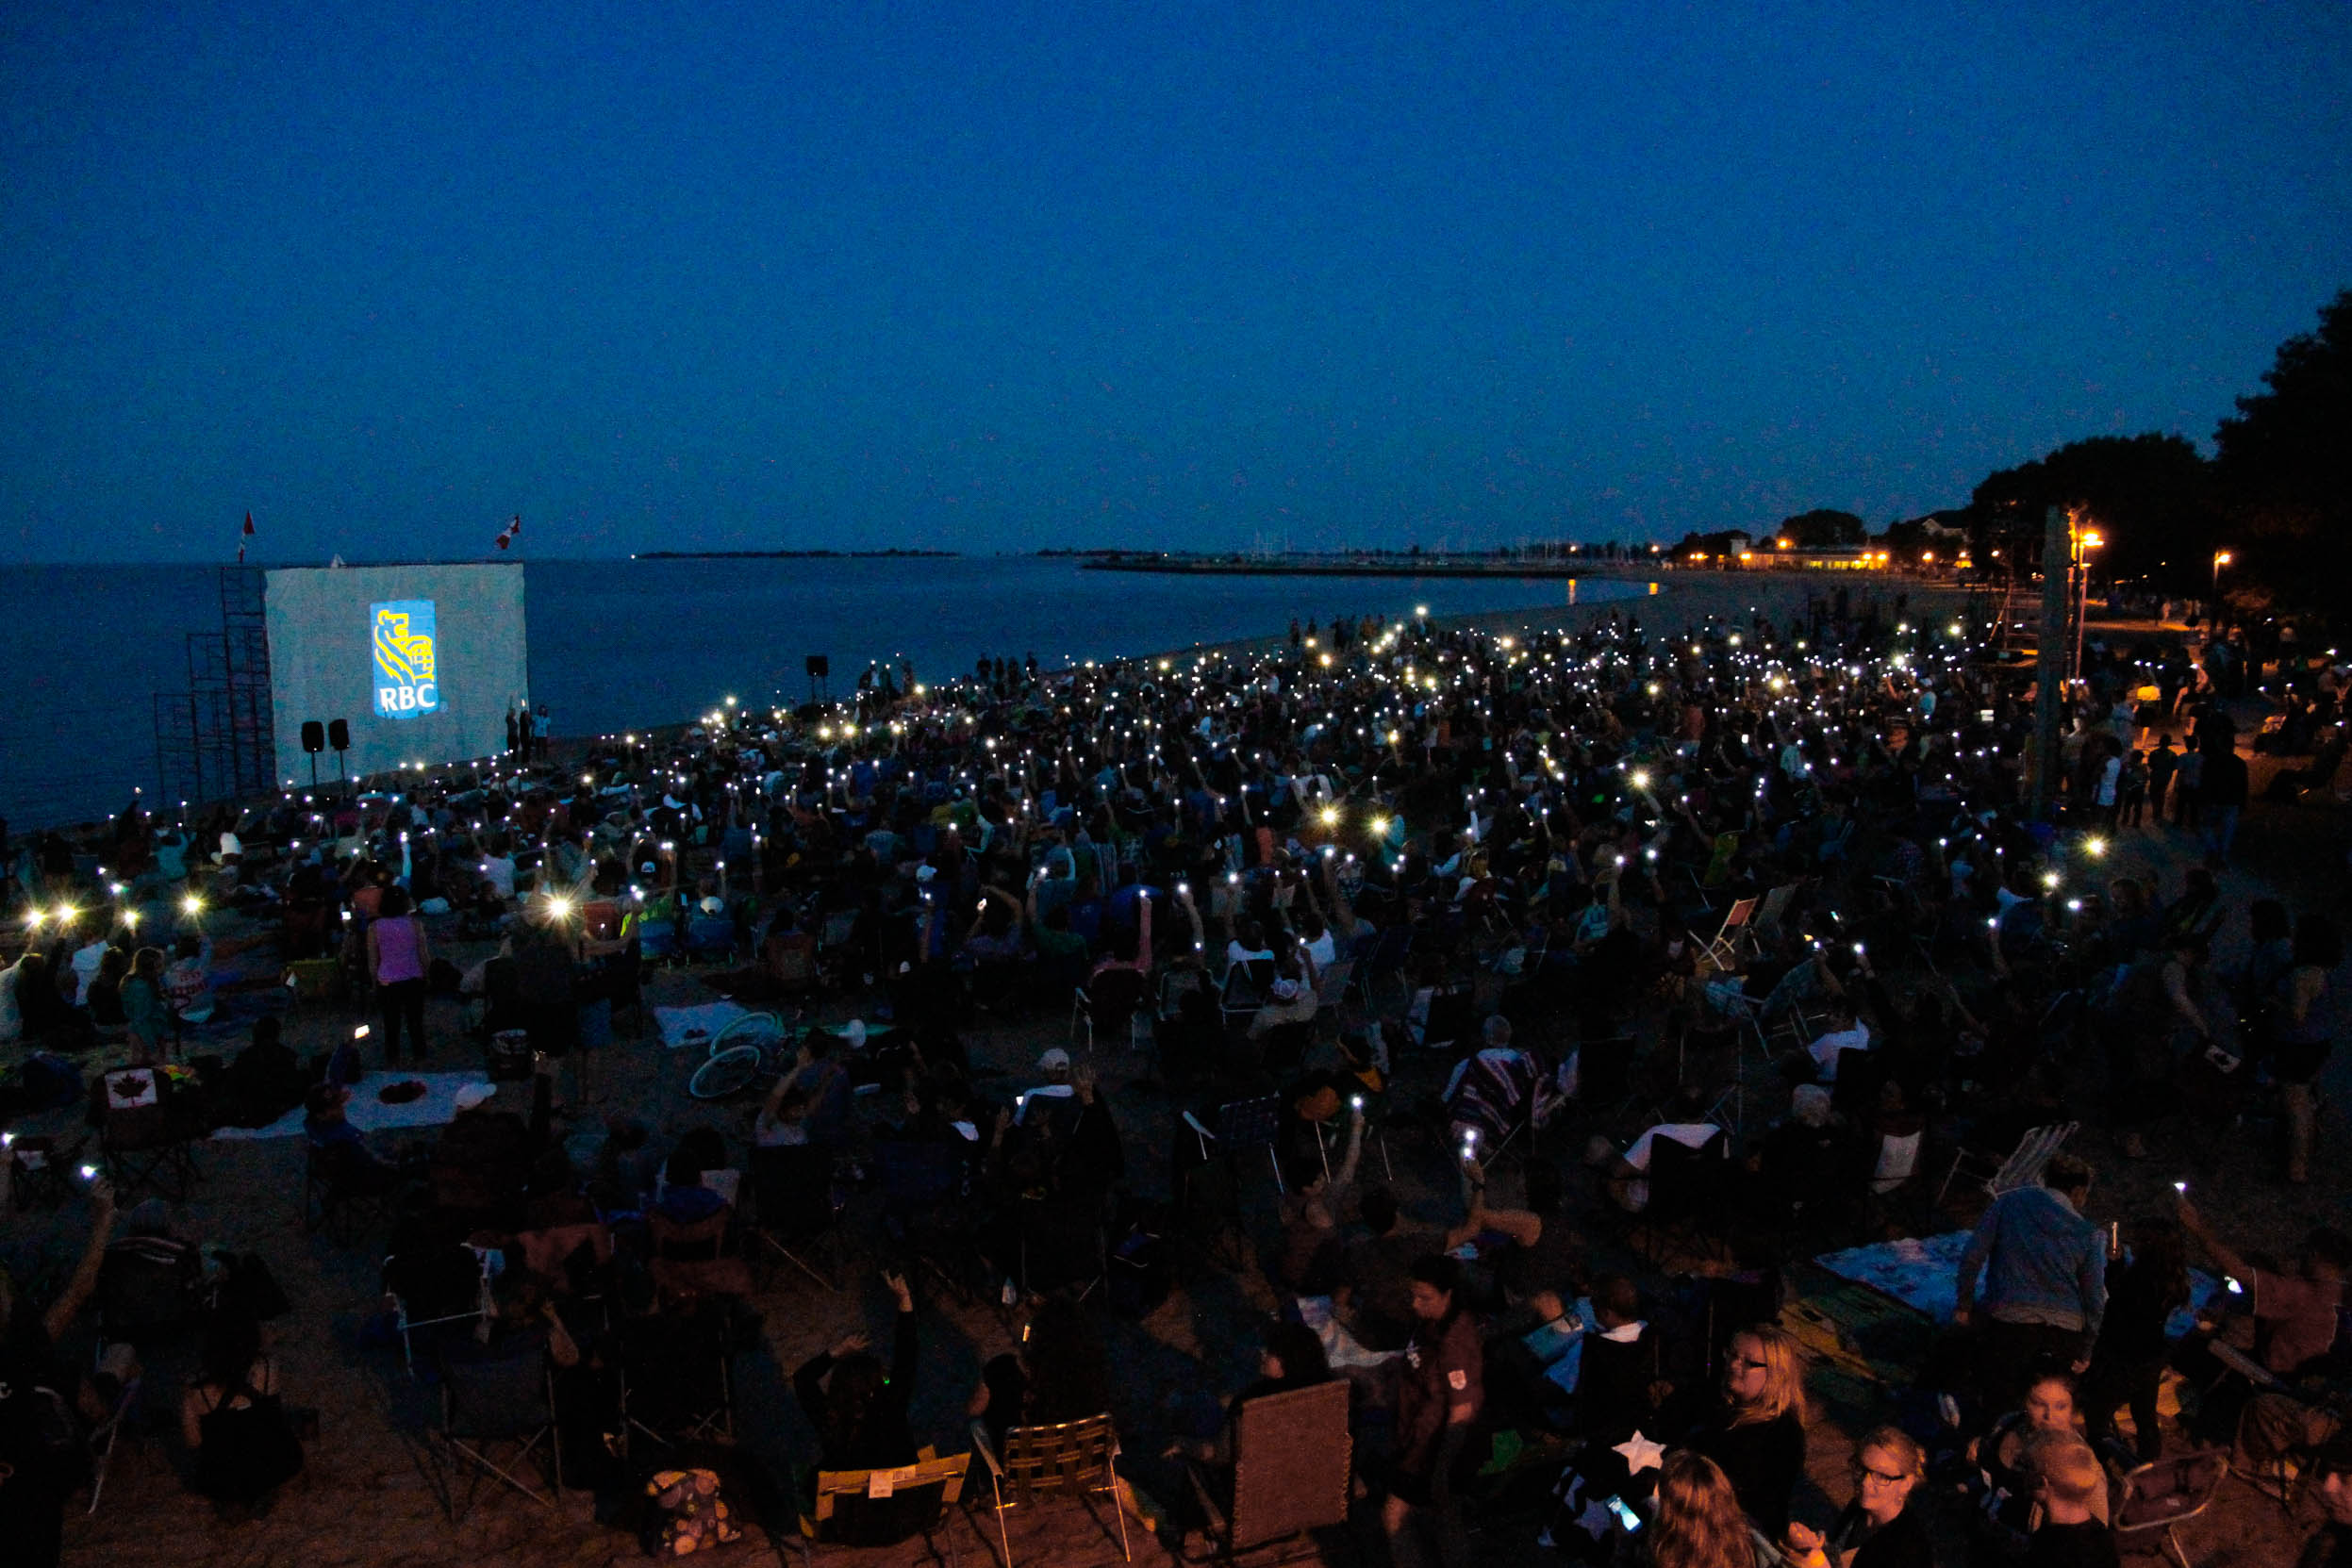 올해 매니토바주의 김리 영화제(Gimli Film Festival)에 영화 134편 출품, 7월 26일부터 30일까지 개최돼